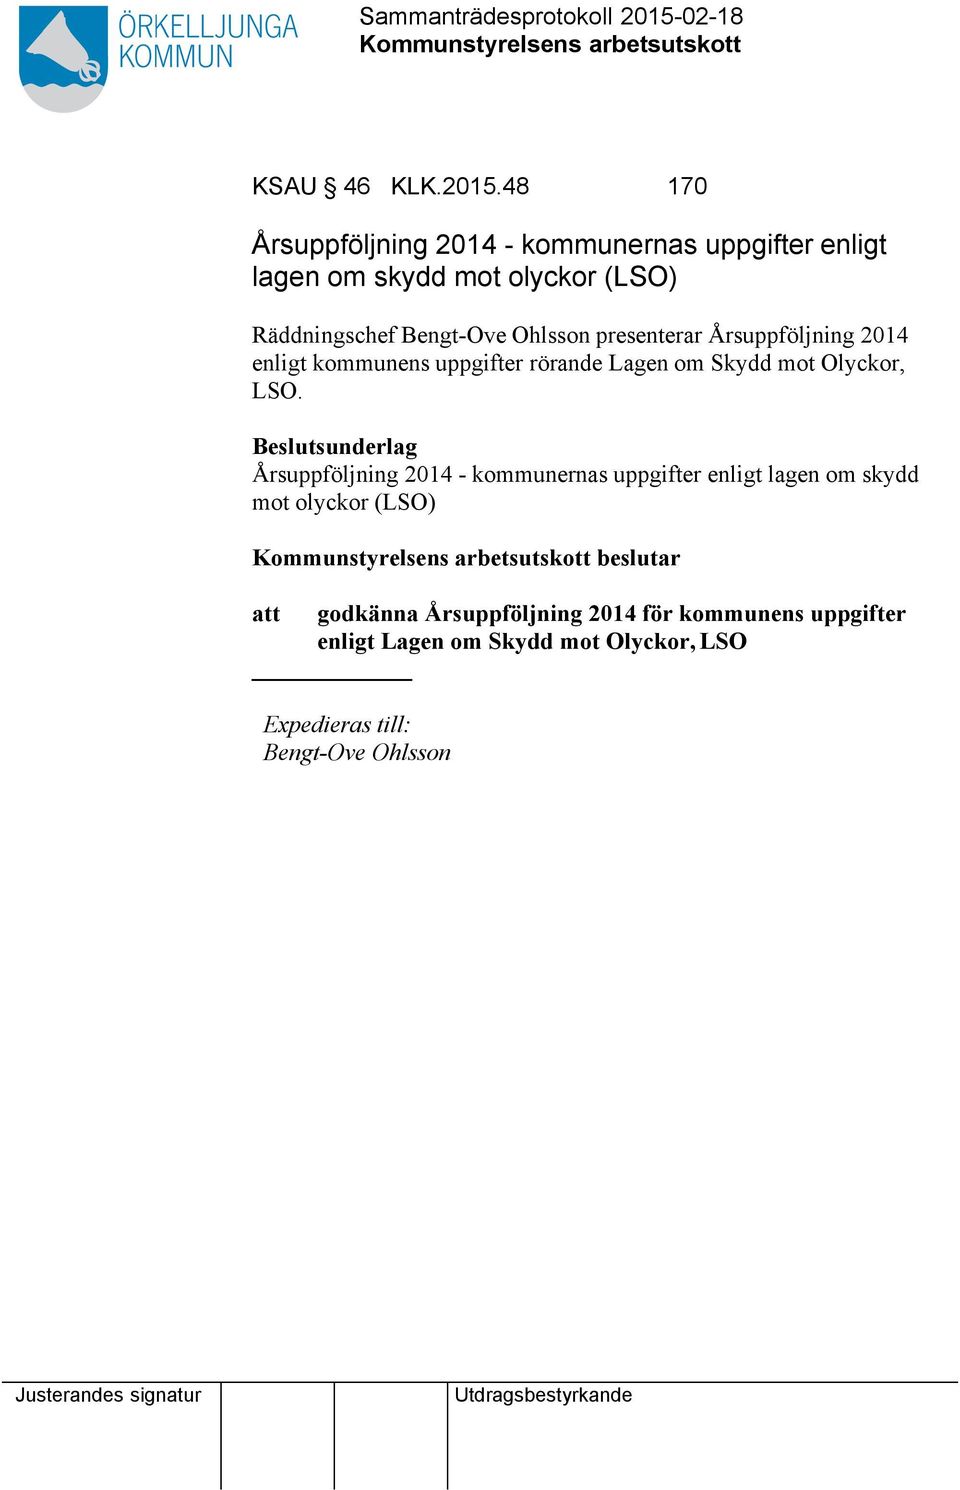 Bengt-Ove Ohlsson presenterar Årsuppföljning 2014 enligt kommunens uppgifter rörande Lagen om Skydd mot